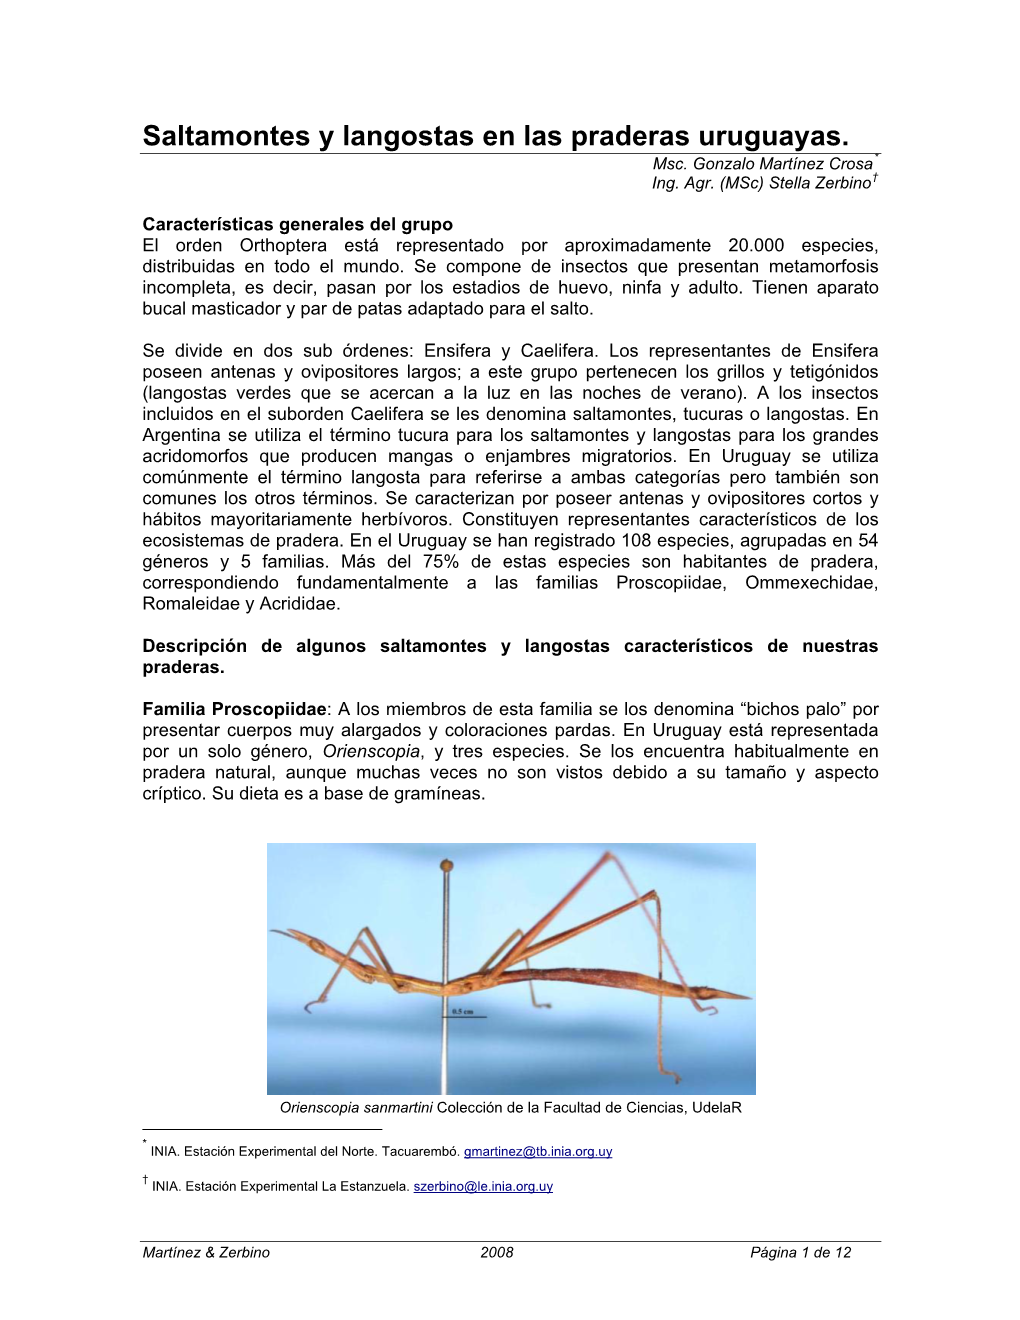 El Orden Orthoptera Contiene Dos Sub Rdenes: Ensifera Y Caelifera